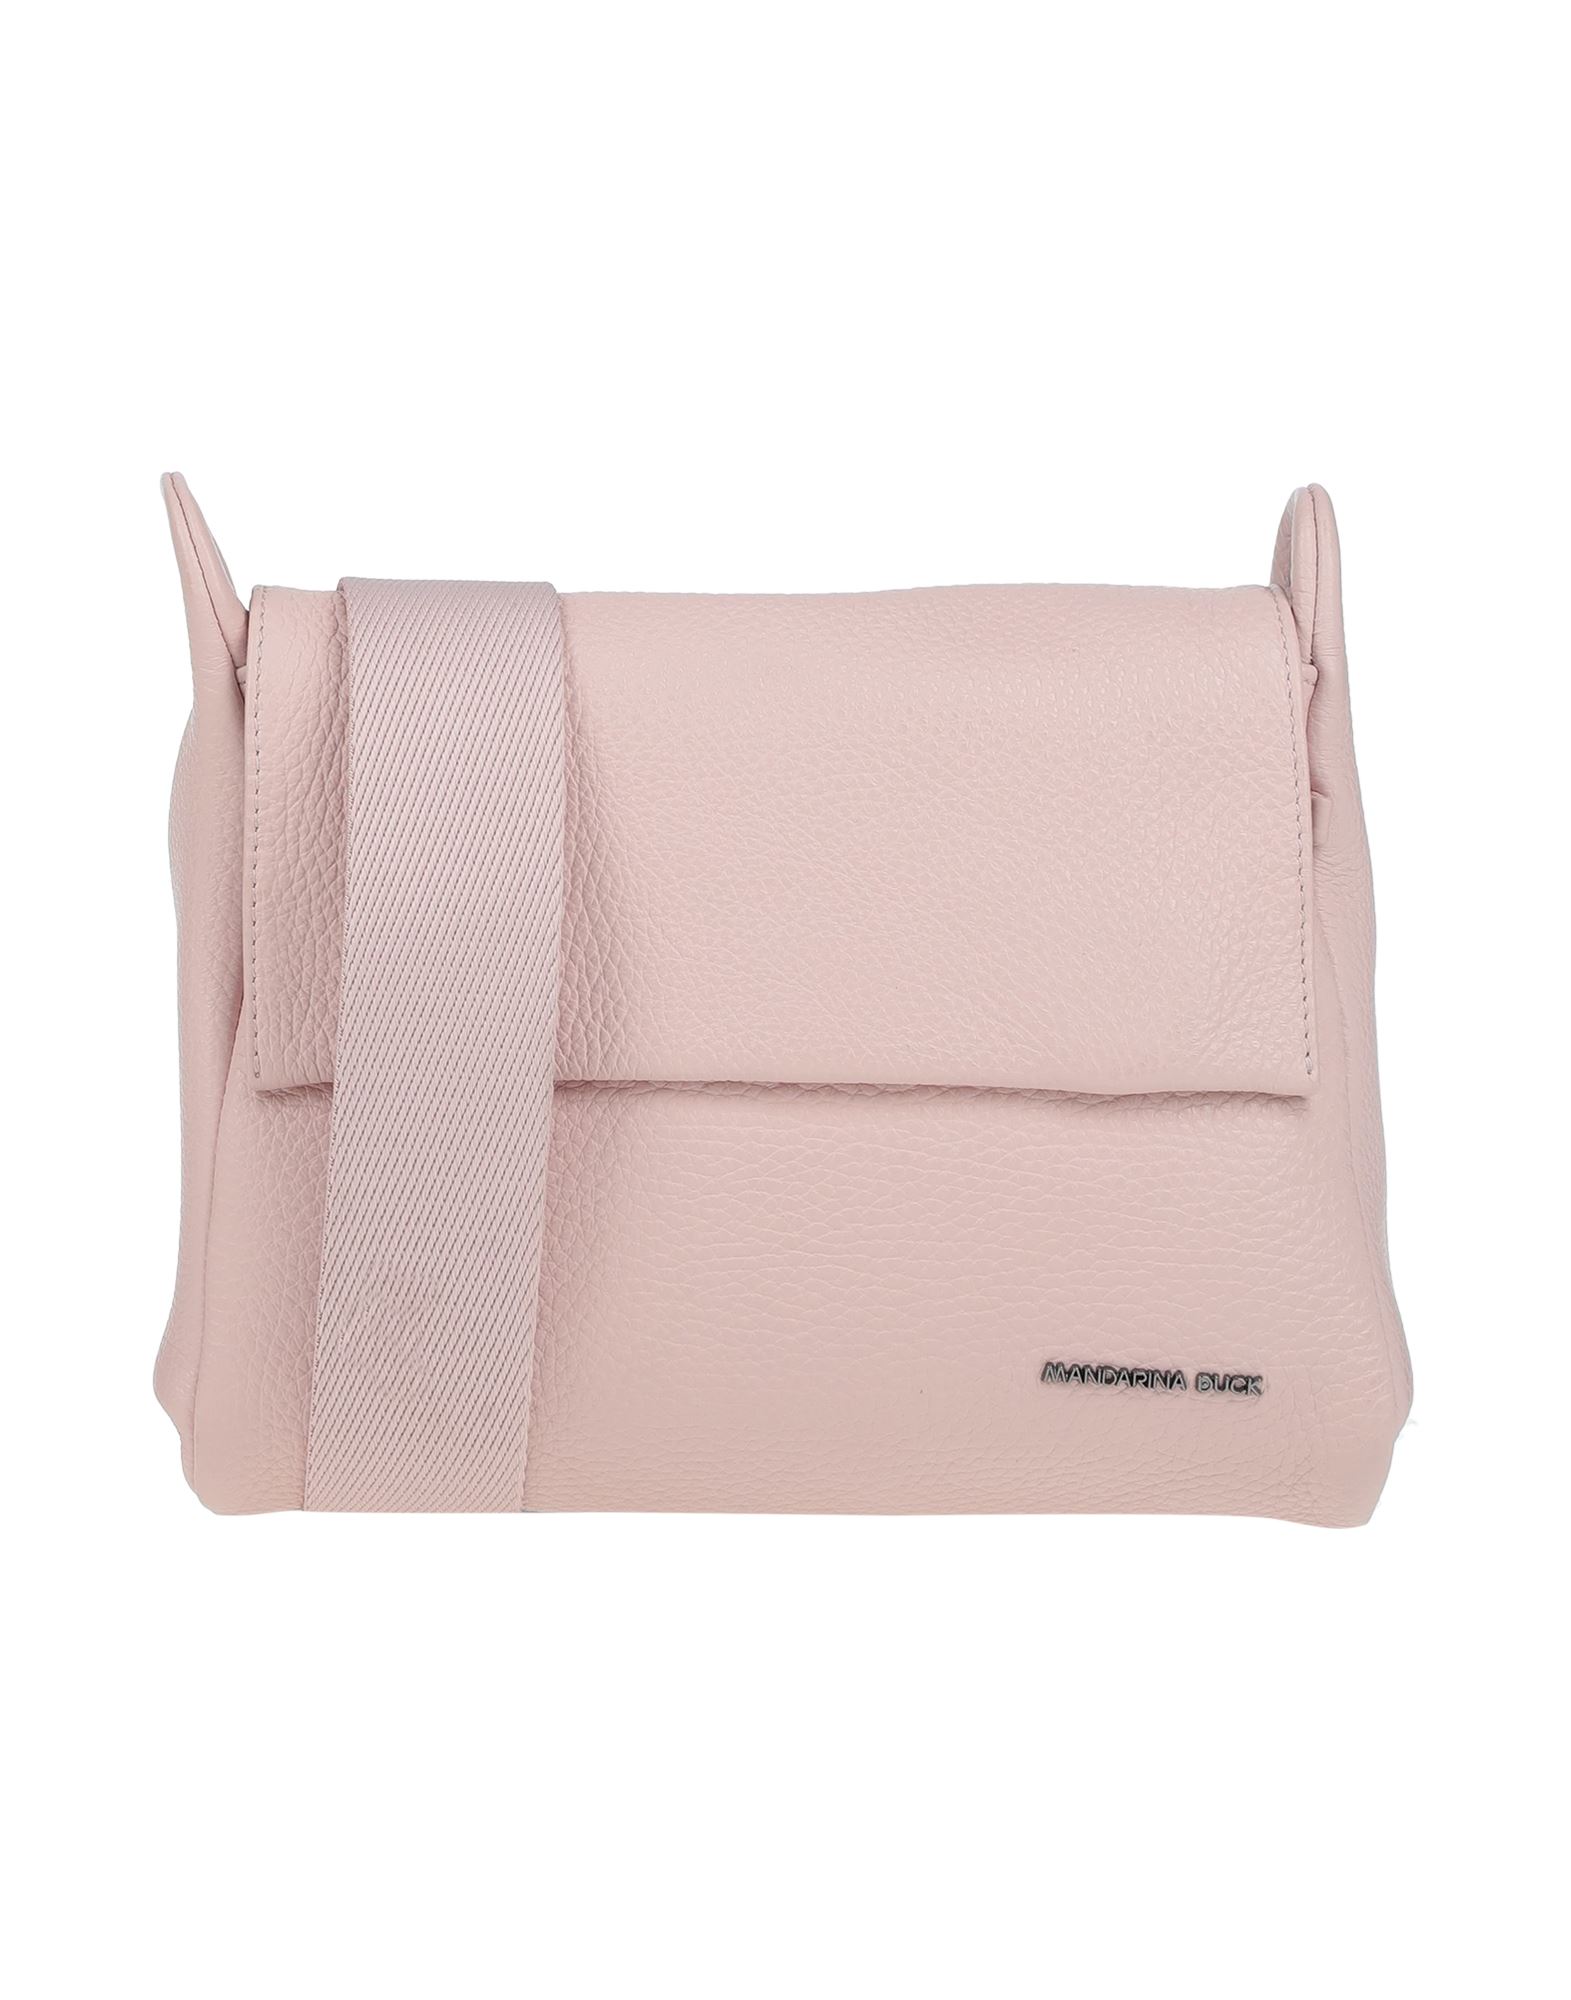 Mandarina Duck Handbags In Light Pink